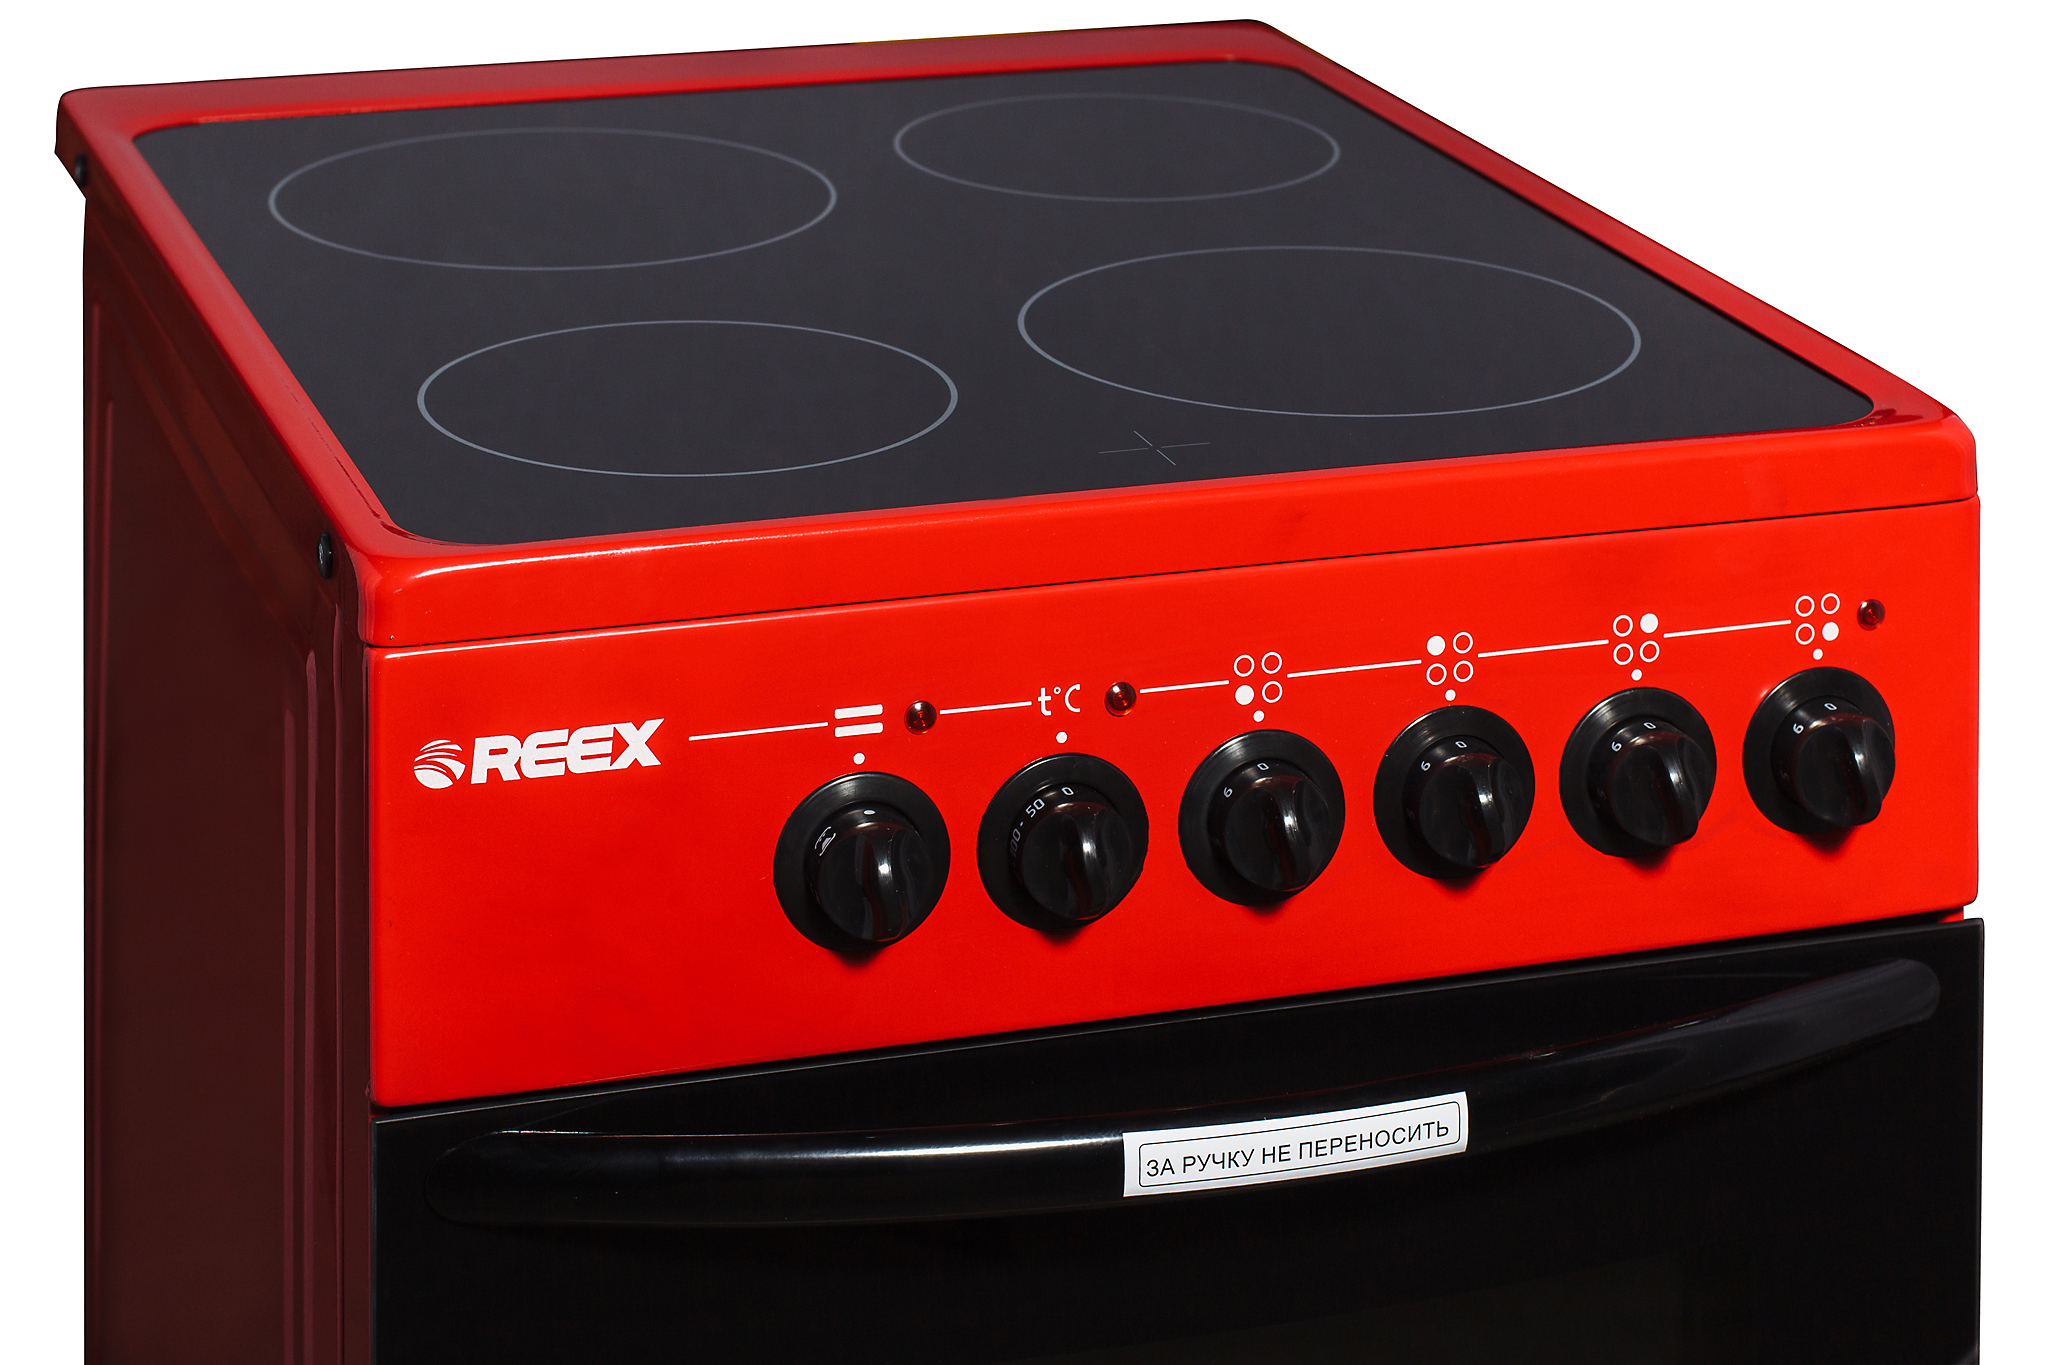 Купить электроплиту в днс. REEX плита. Плита электрическая красная. Красная плита. Электрическая плита красного цвета.